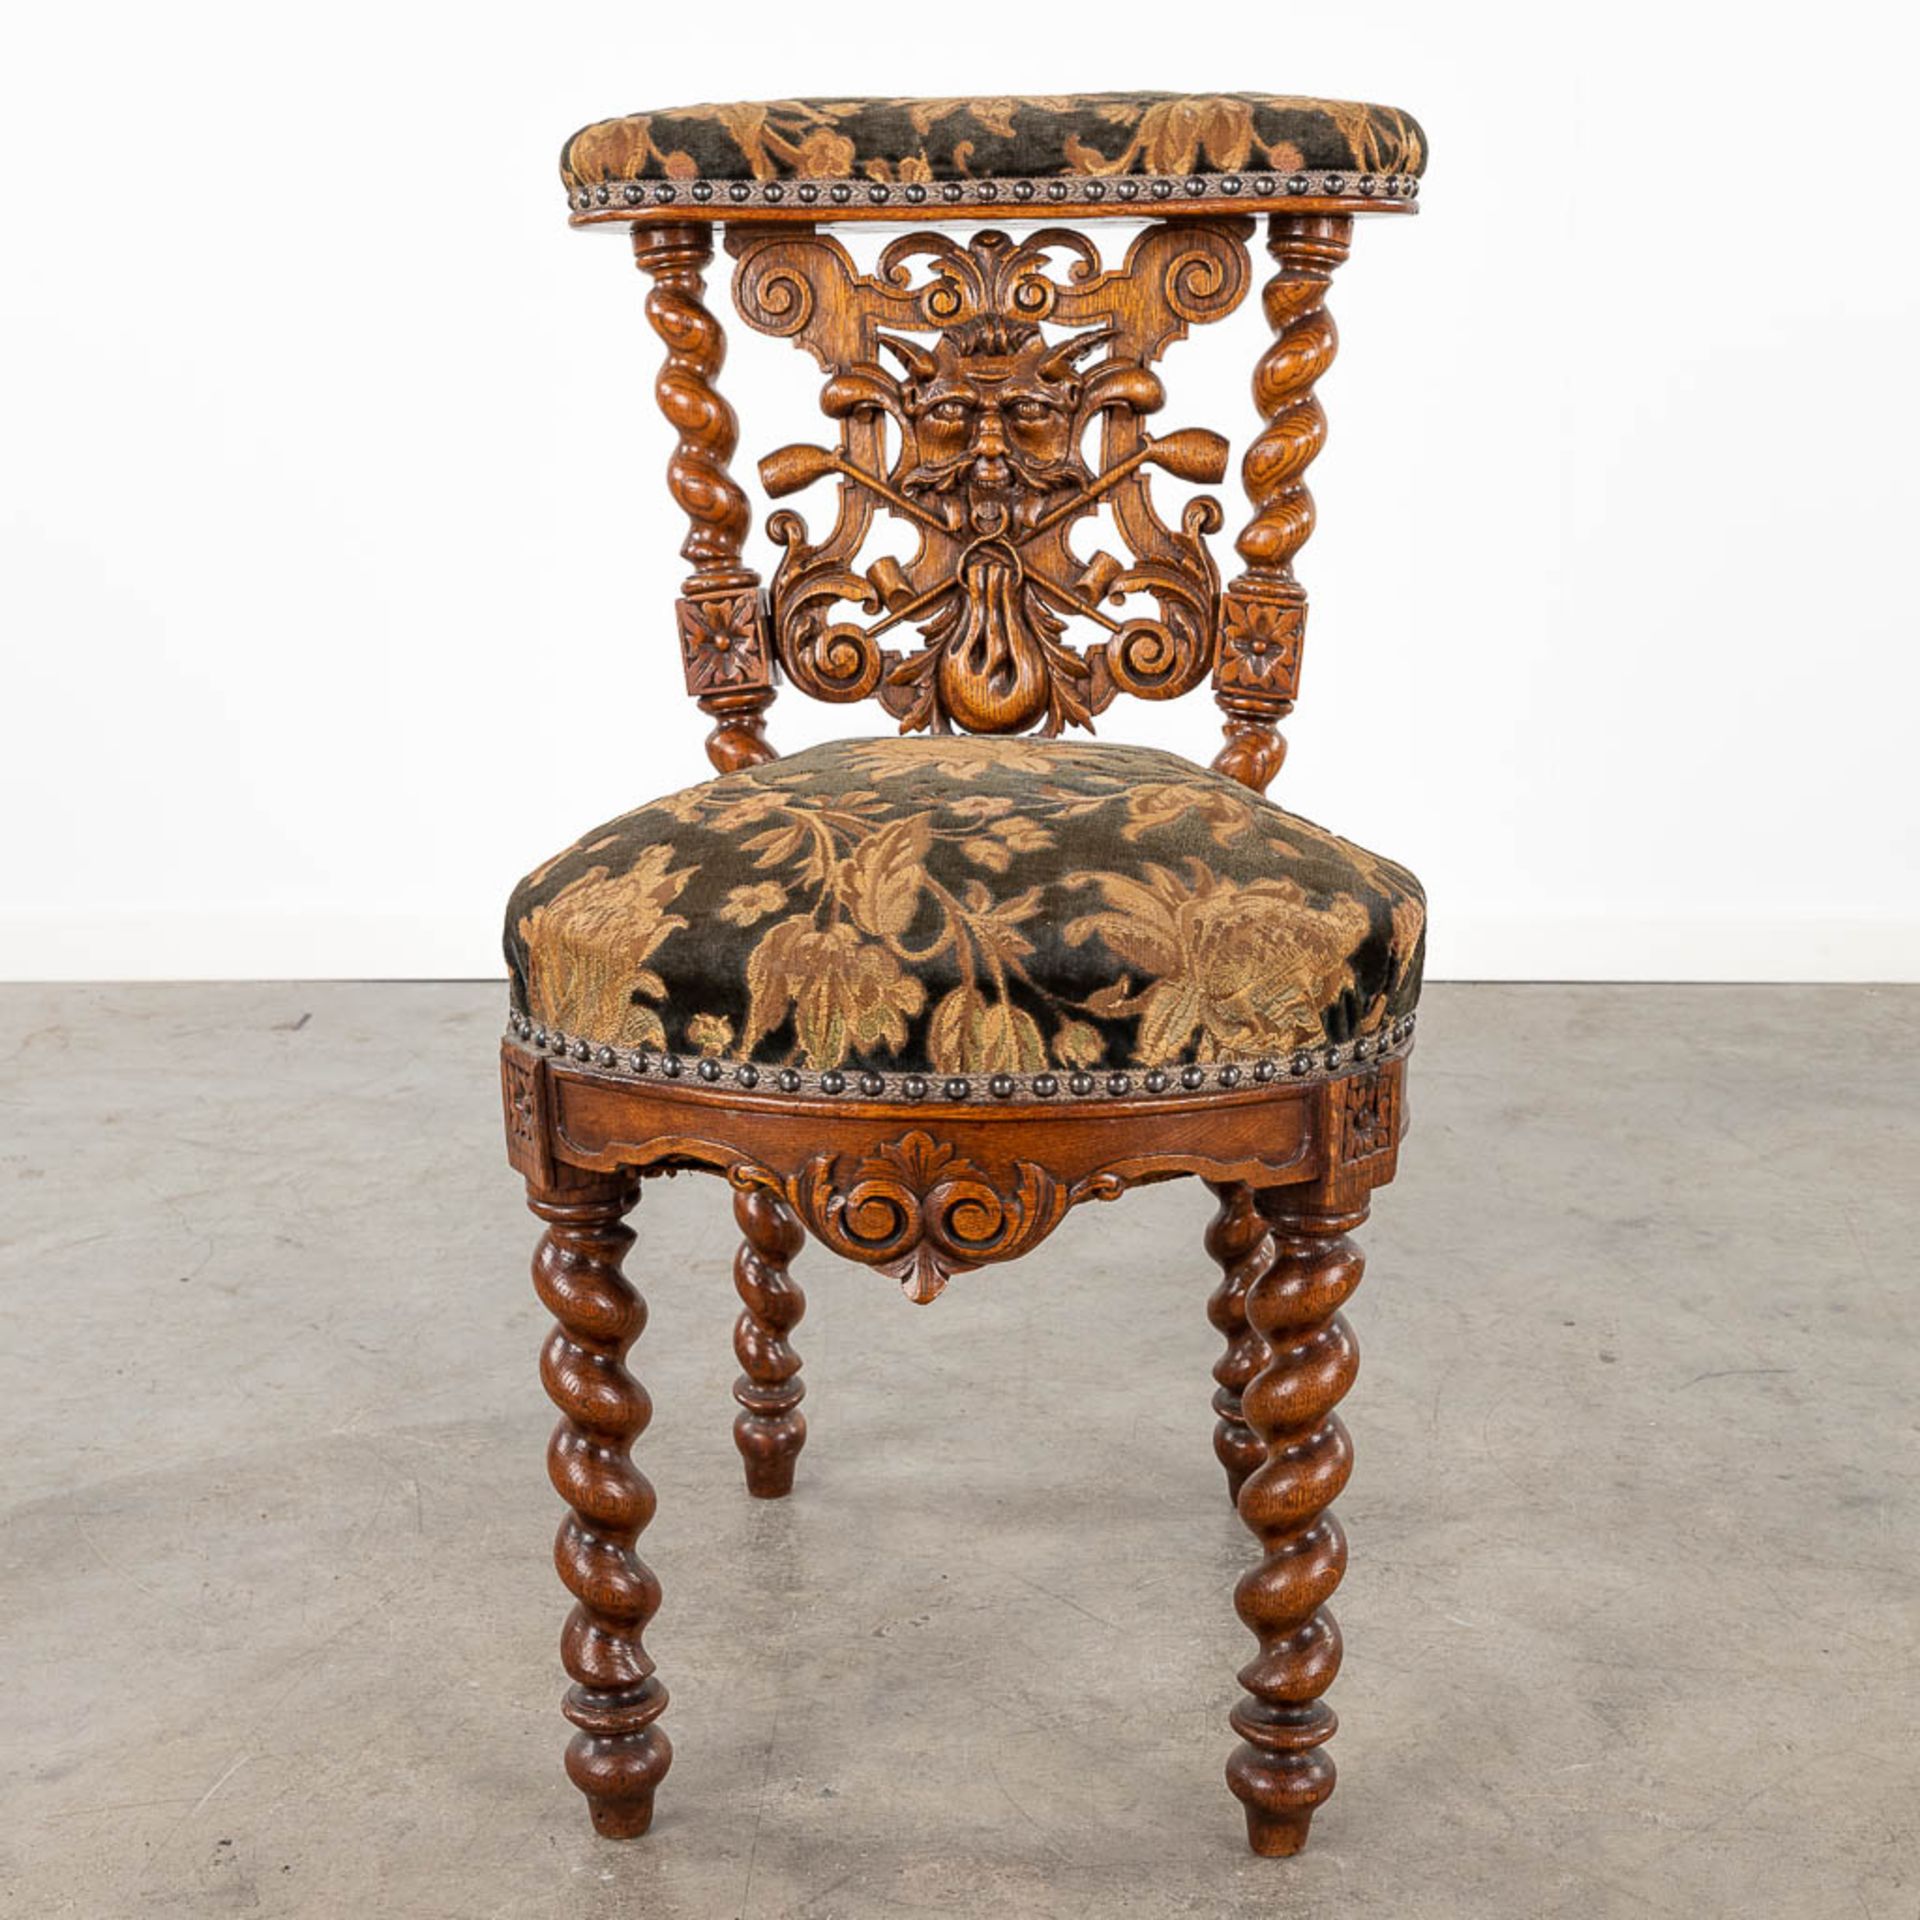 A set of 4 antique wood-sculptured smoker's chairs, oak. Circa 1900. (L:55 x W:44 x H:80 cm) - Bild 6 aus 15